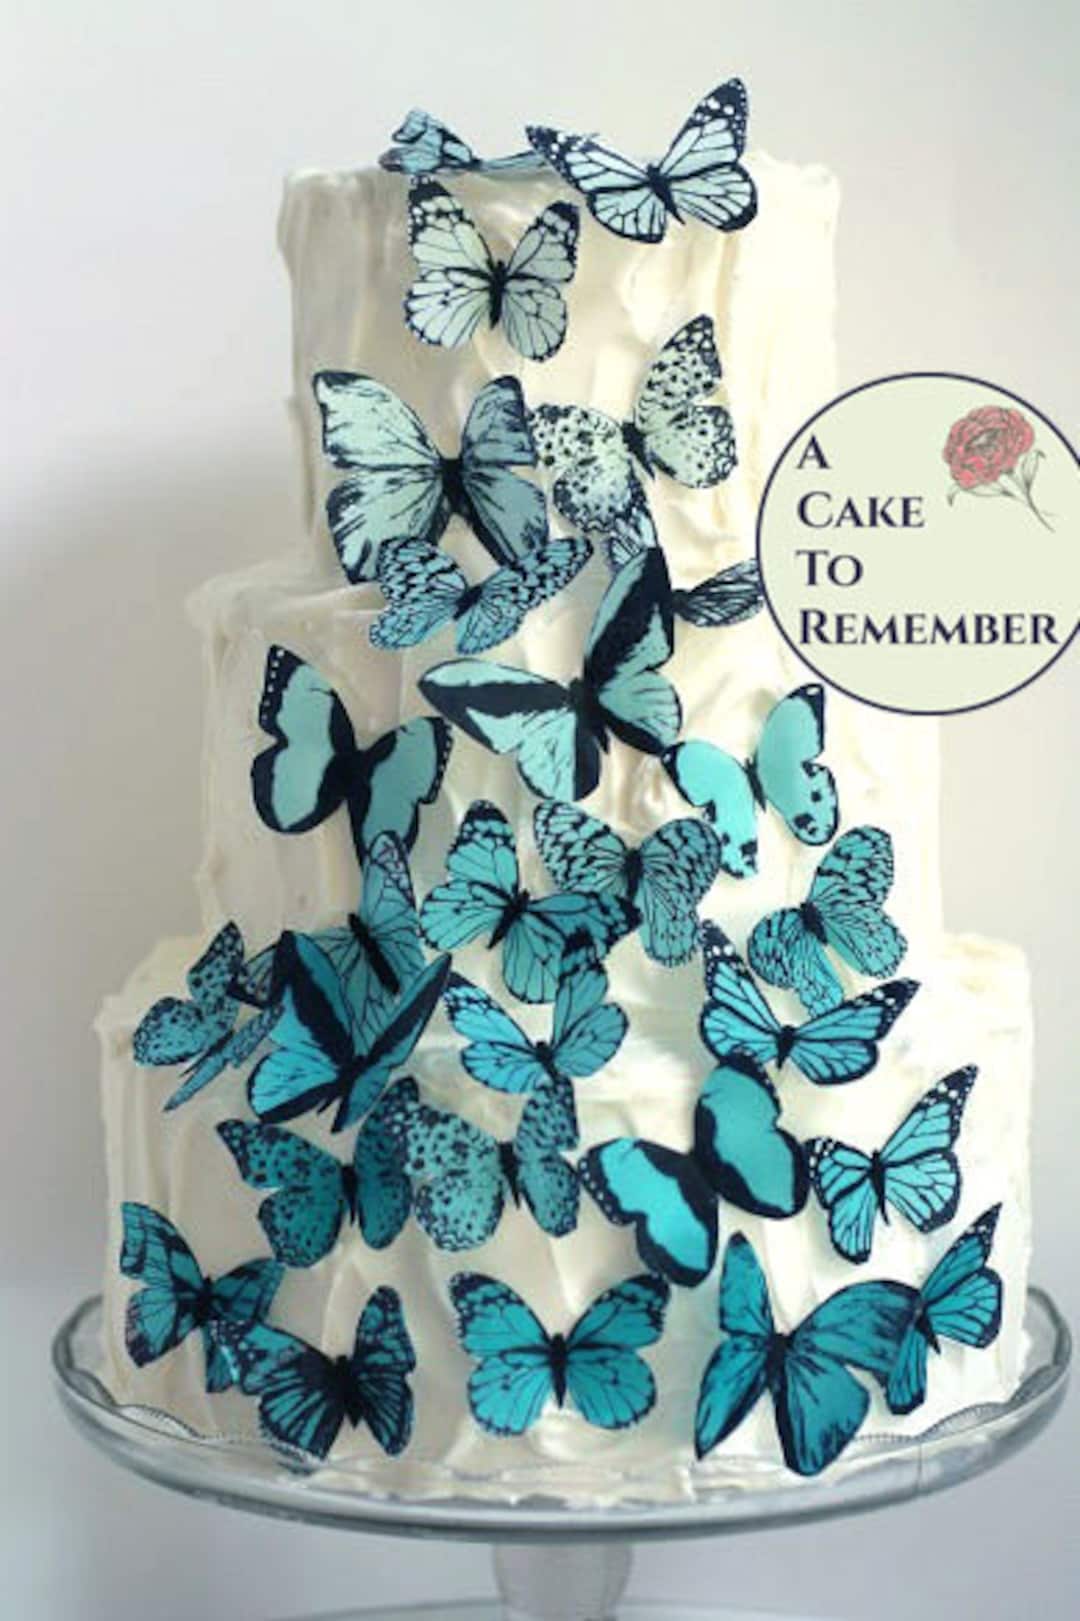 Mariposas comestibles de gran tamaño, hechas a mano en los Estados Unidos,  decoración para tartas y cupcakes (verde)